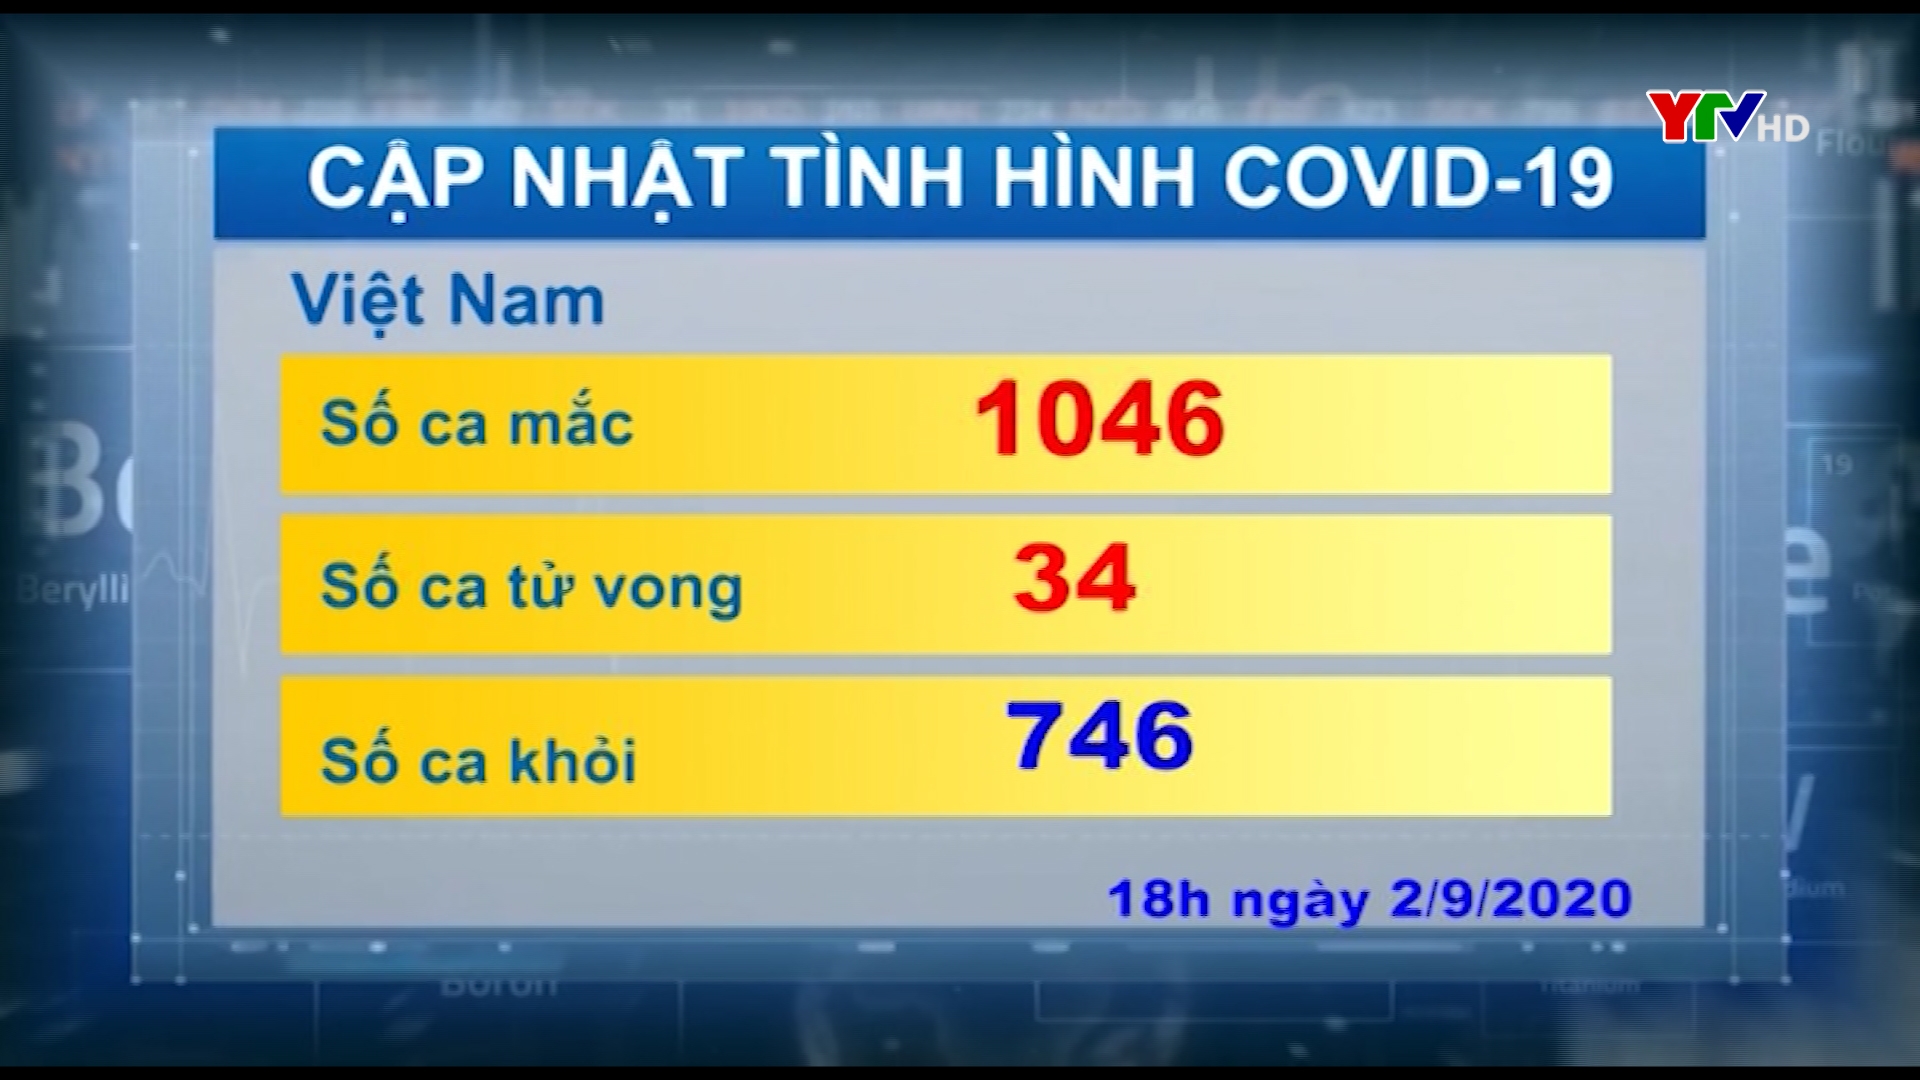 Việt Nam ghi nhận tổng số 1046 ca nhiễm COVID - 19